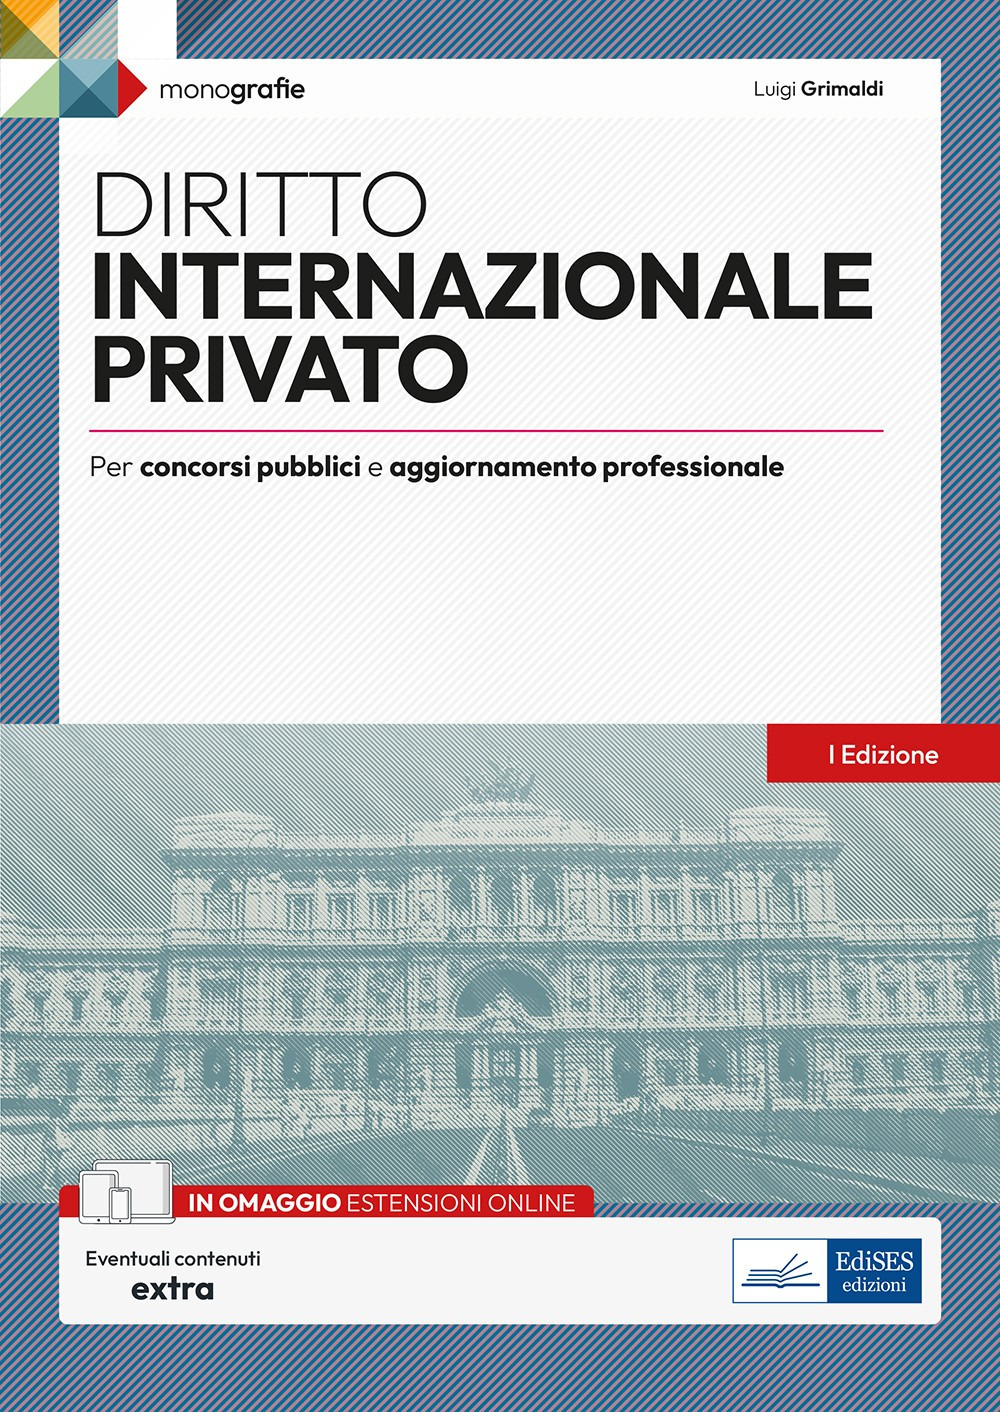 Diritto internazionale privato. Per concorsi pubblici e aggiornamento professionale. Con estensioni online